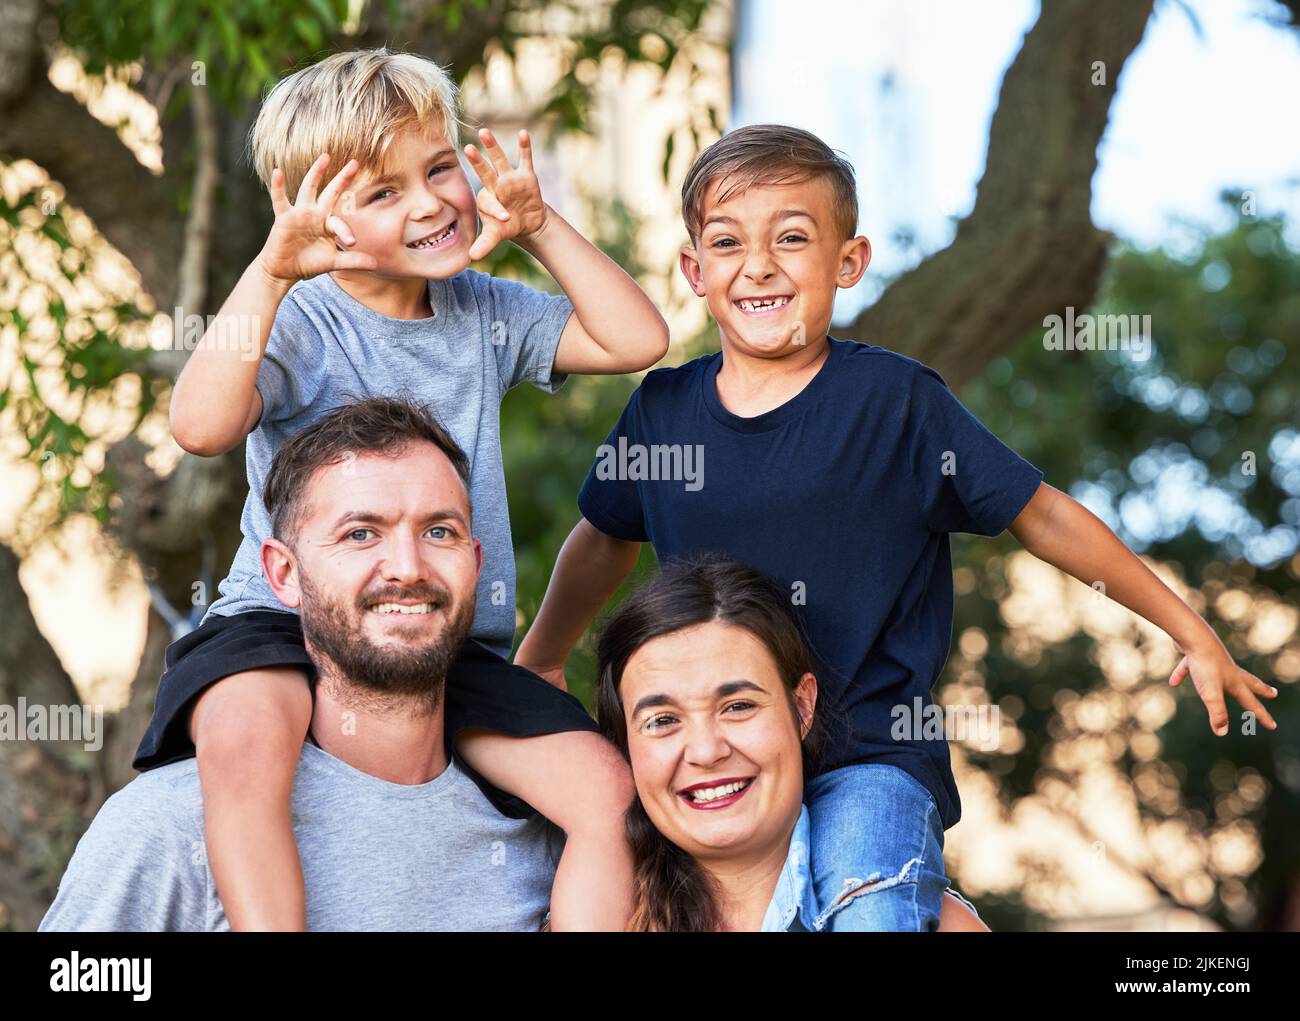 Padre- qualcuno che porta le immagini dove una volta ha mantenuto i soldi. Ritratto di una bella famiglia con i loro figli sulle spalle in un parco. Foto Stock